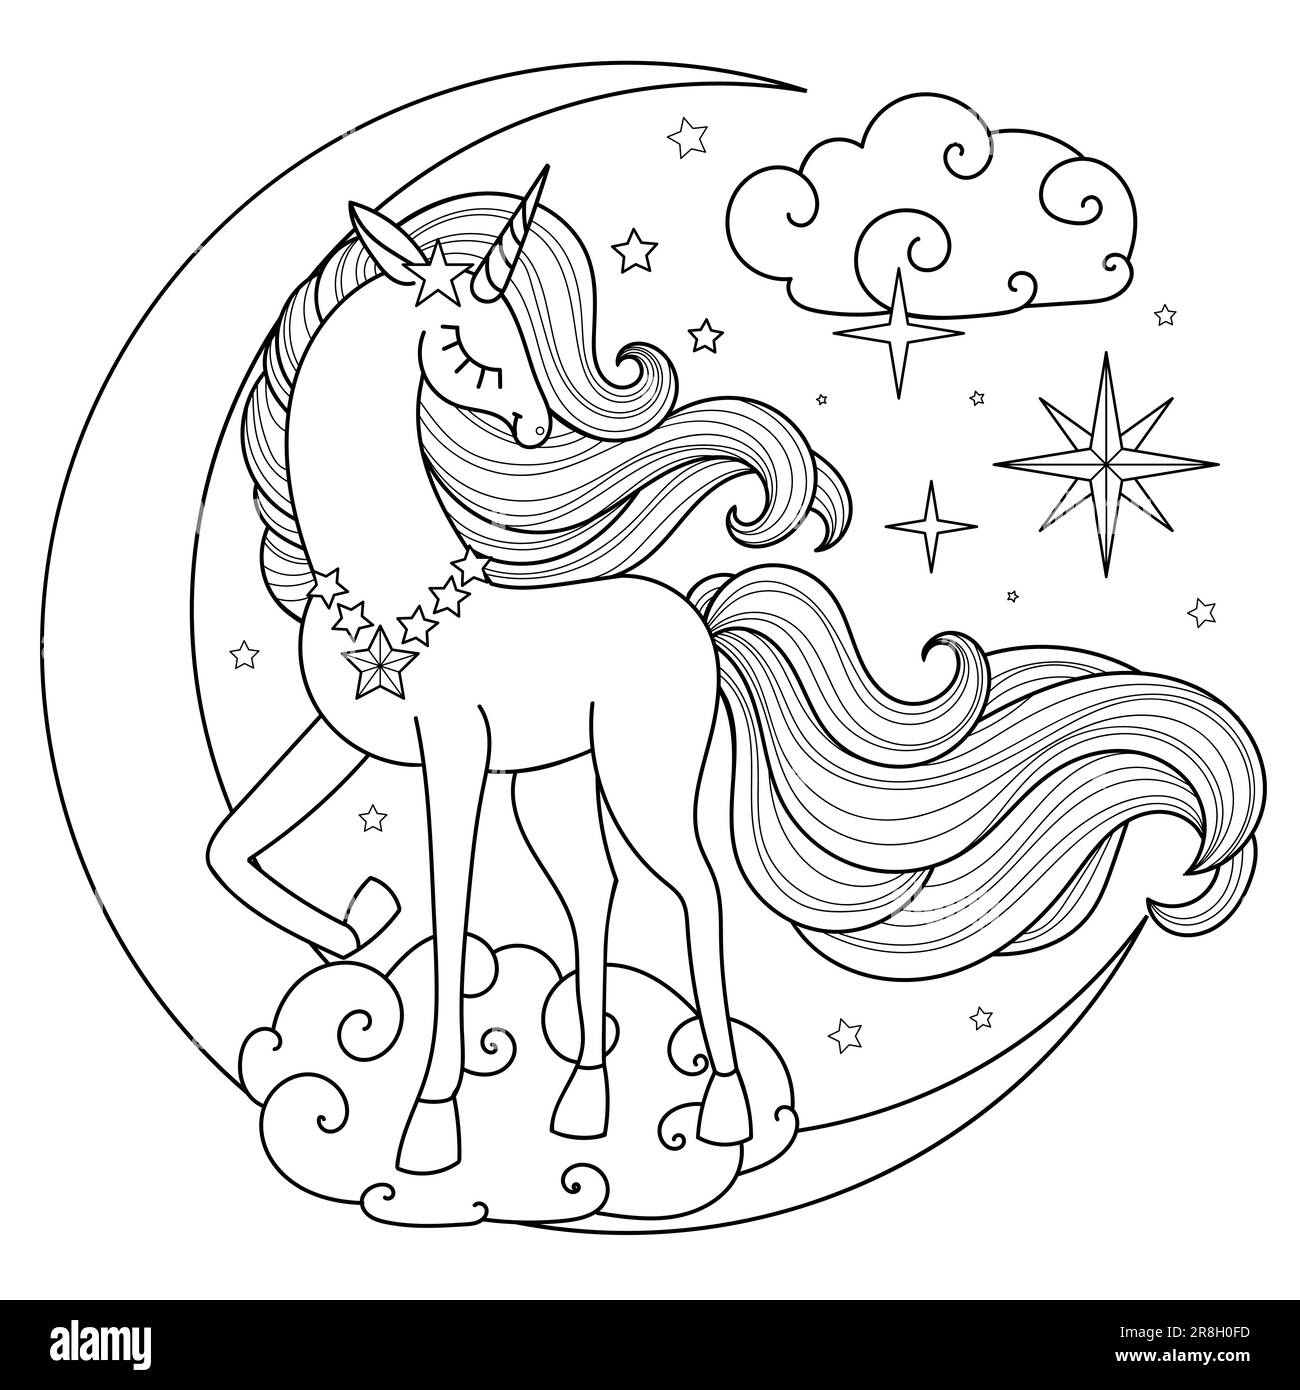 Una bella unicorno con una lunga criniera e coda sulla luna. Disegno lineare in bianco e nero. Per la progettazione di libri da colorare, stampe, poster, c Illustrazione Vettoriale